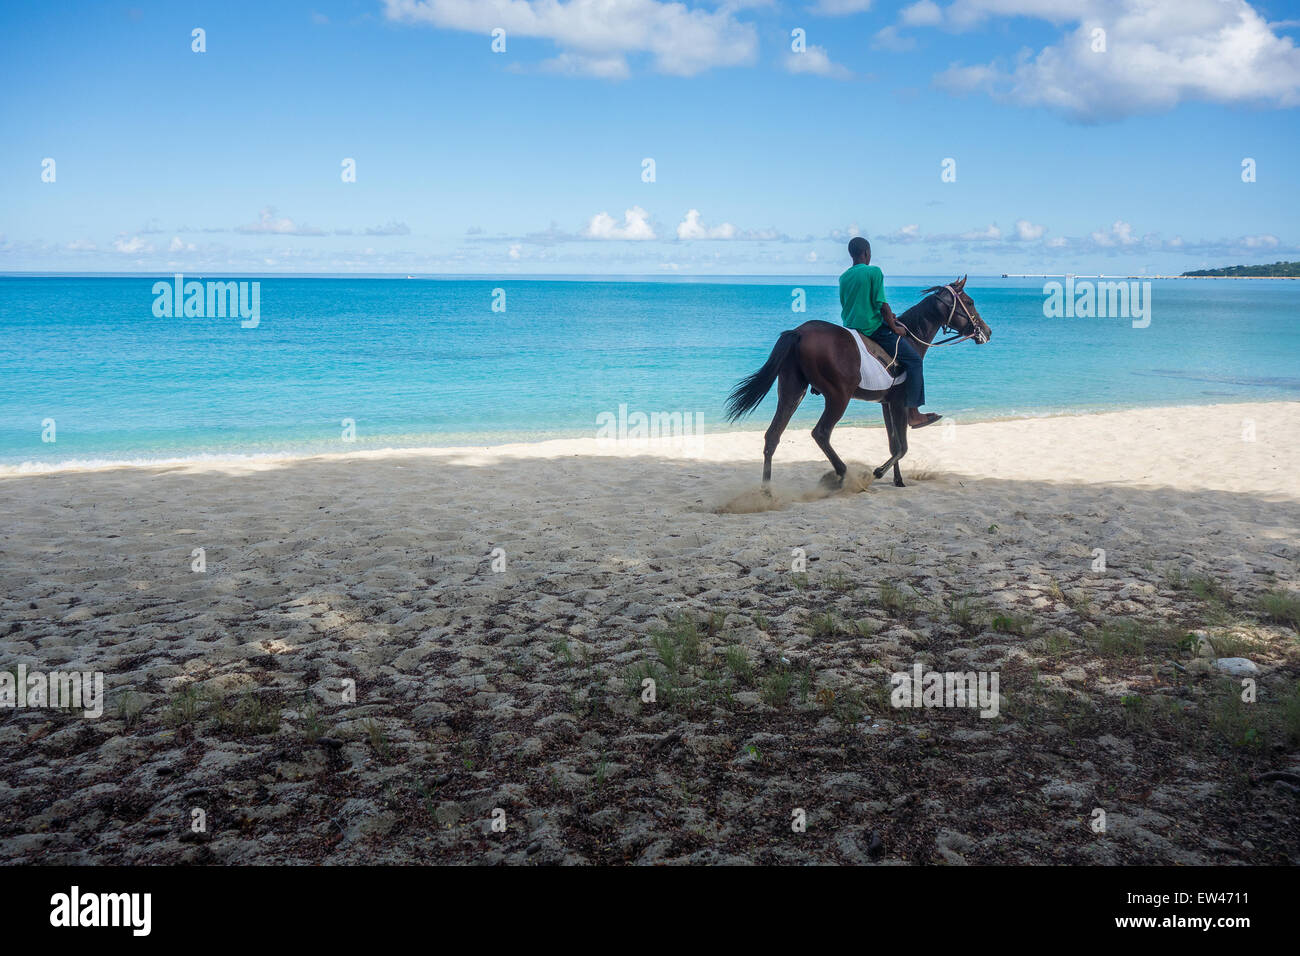 Un indigène, le carassin, Cruzan ou chevauche son cheval étalon sur la plage de sable de la région de Sainte Croix, Îles Vierges des États-Unis. Banque D'Images